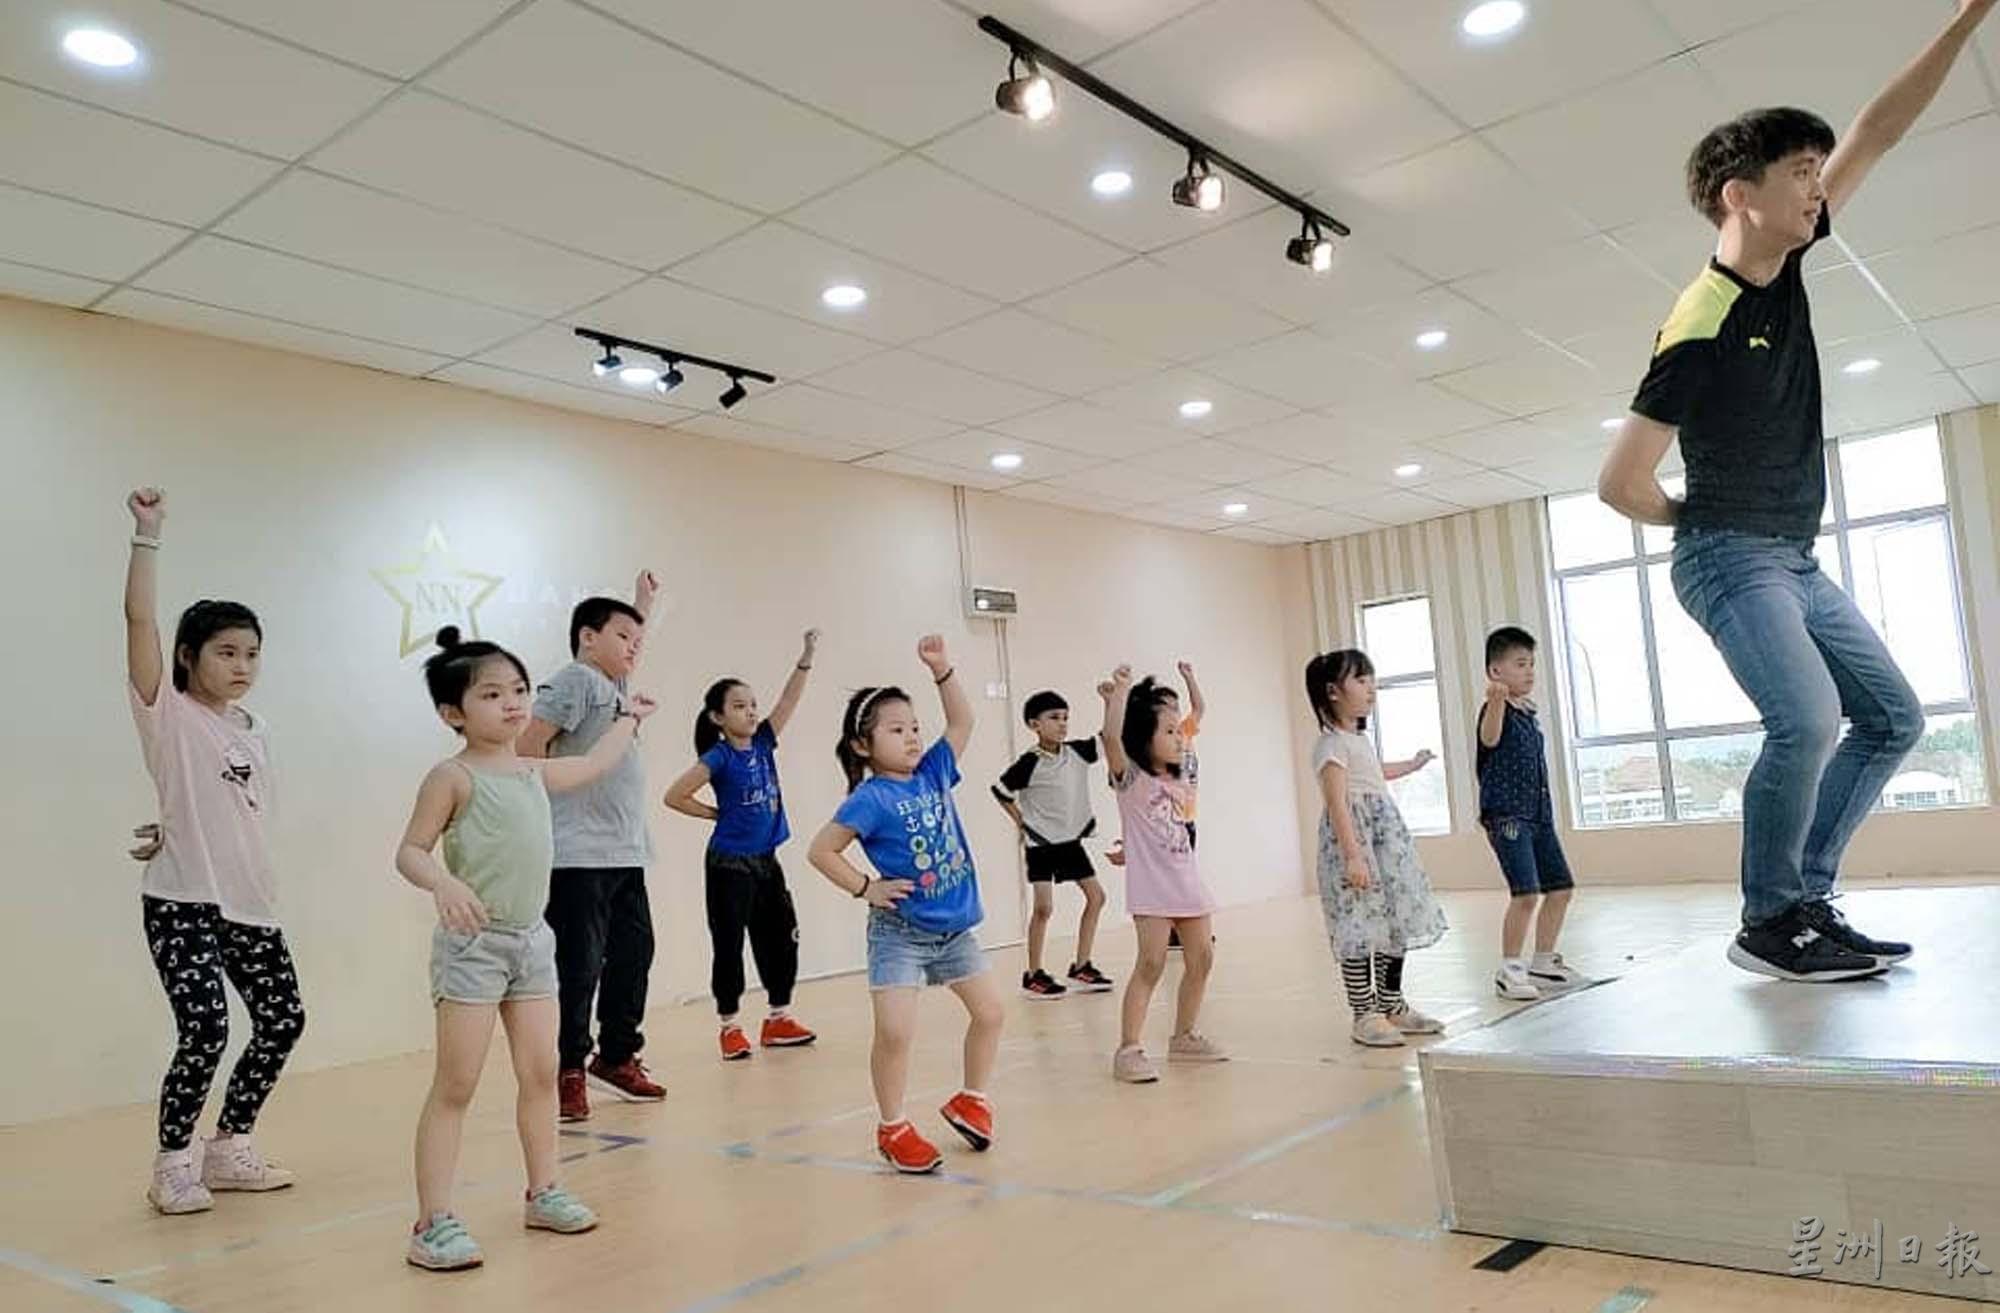 舞蹈专业科班出身的徐健南，认真教导小孩们练舞。

